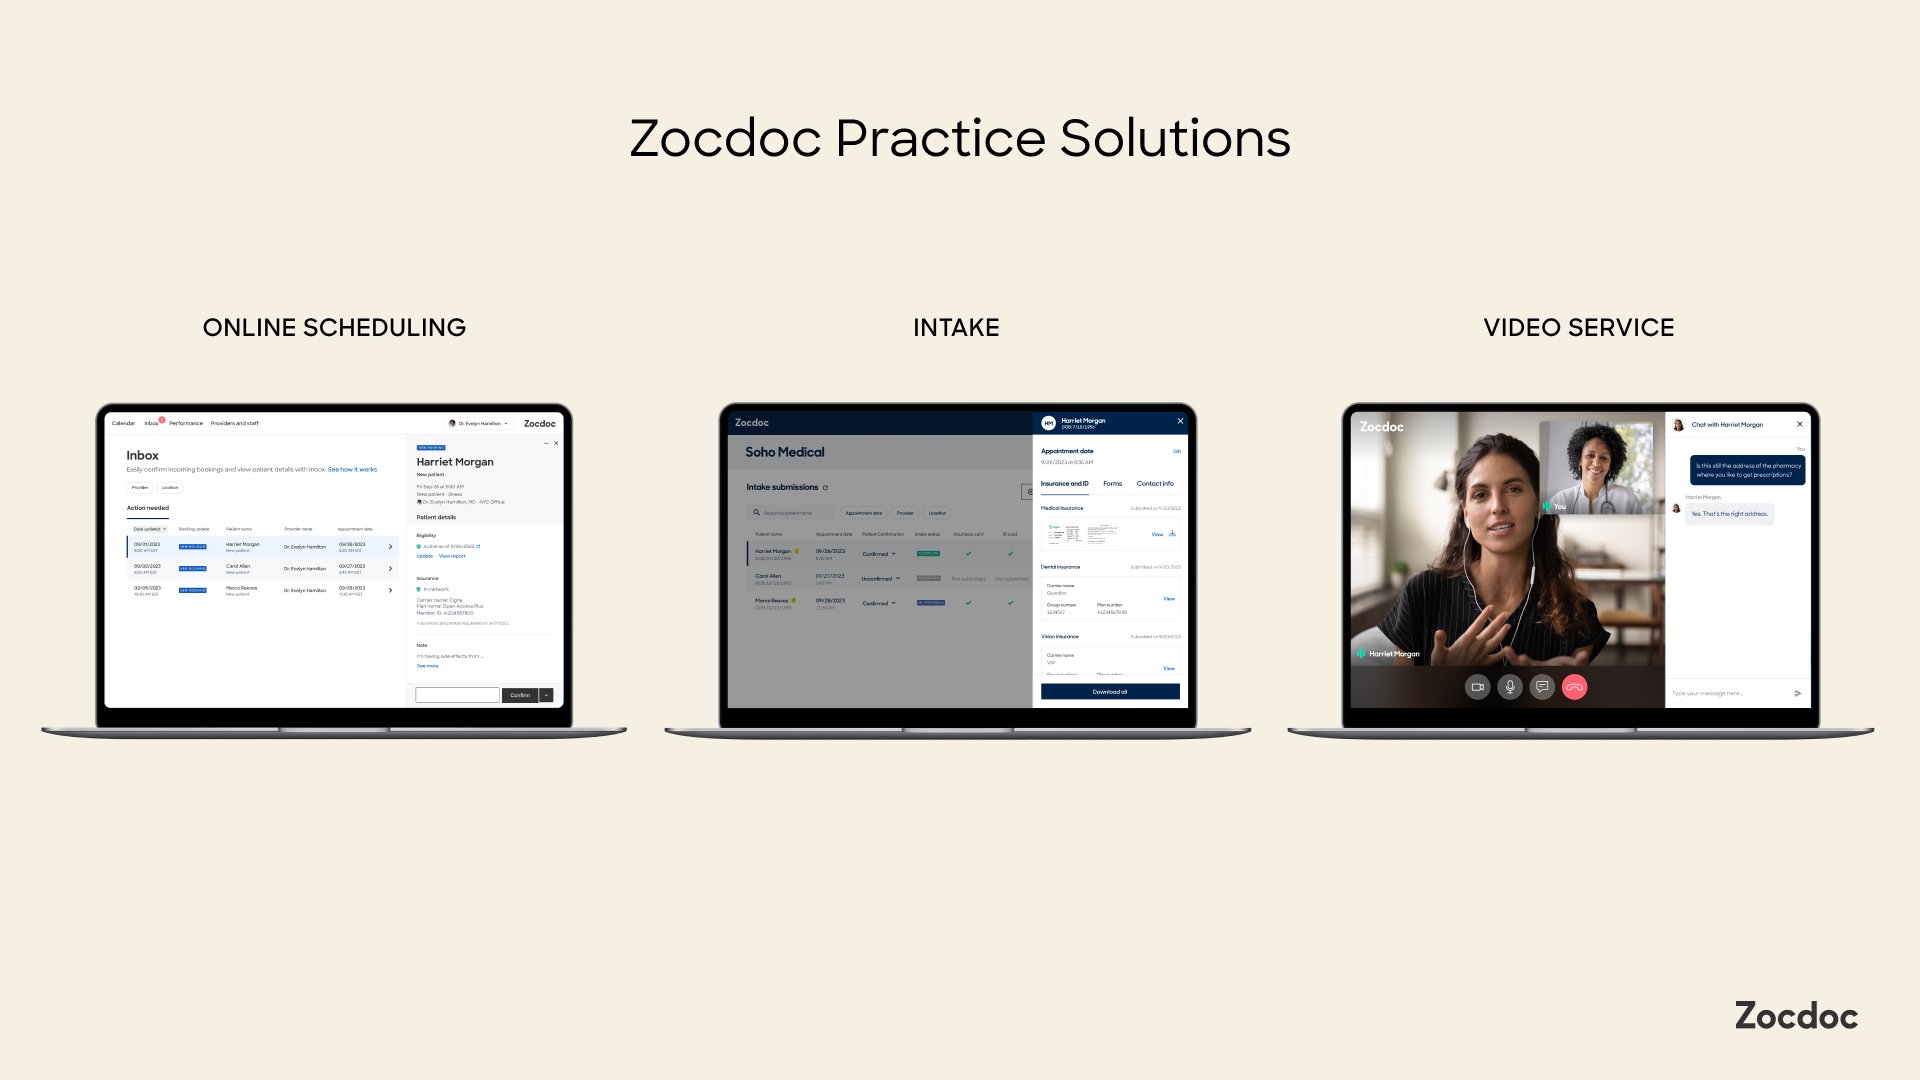 Zocdoc Practice Solutions overview